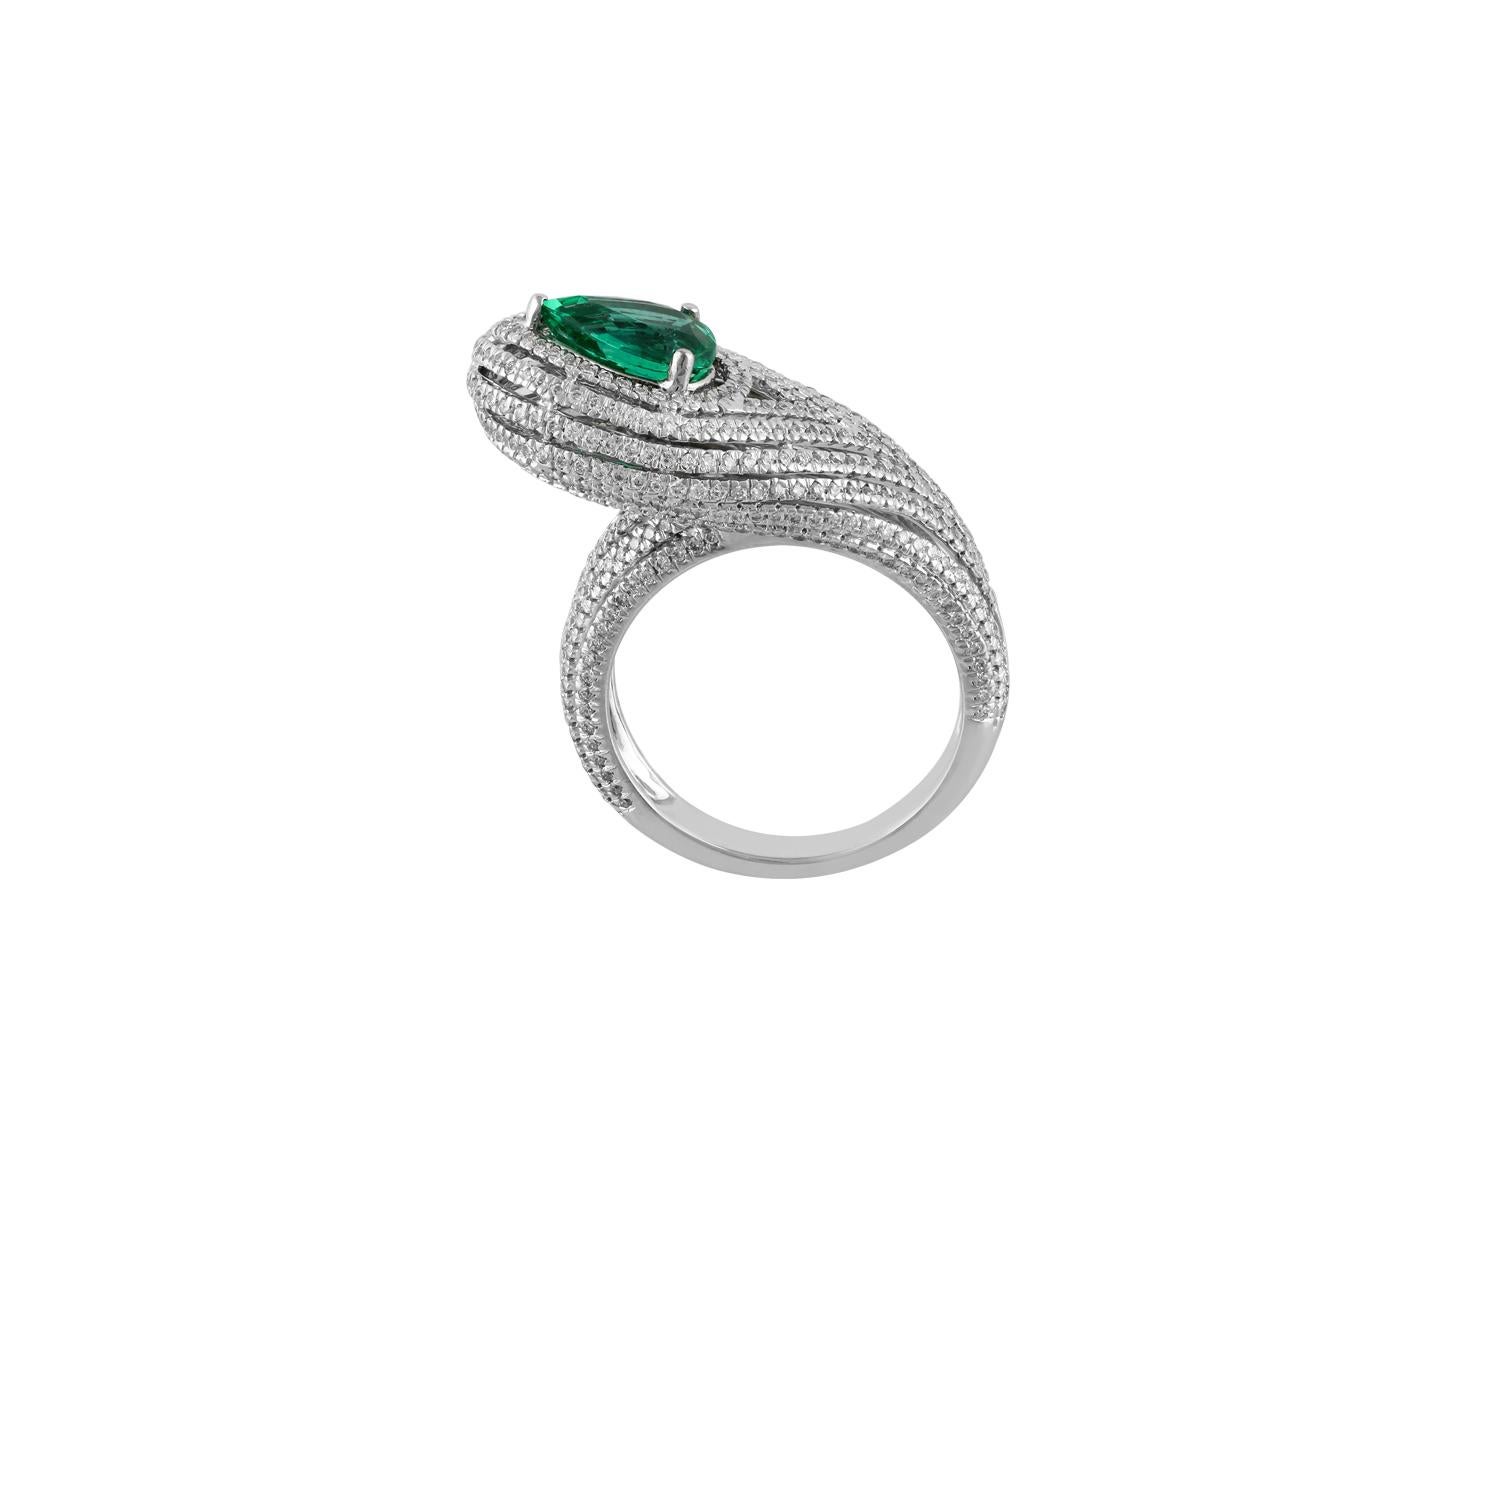 Emerald 1.31 carats
Diamond 1.19 carats